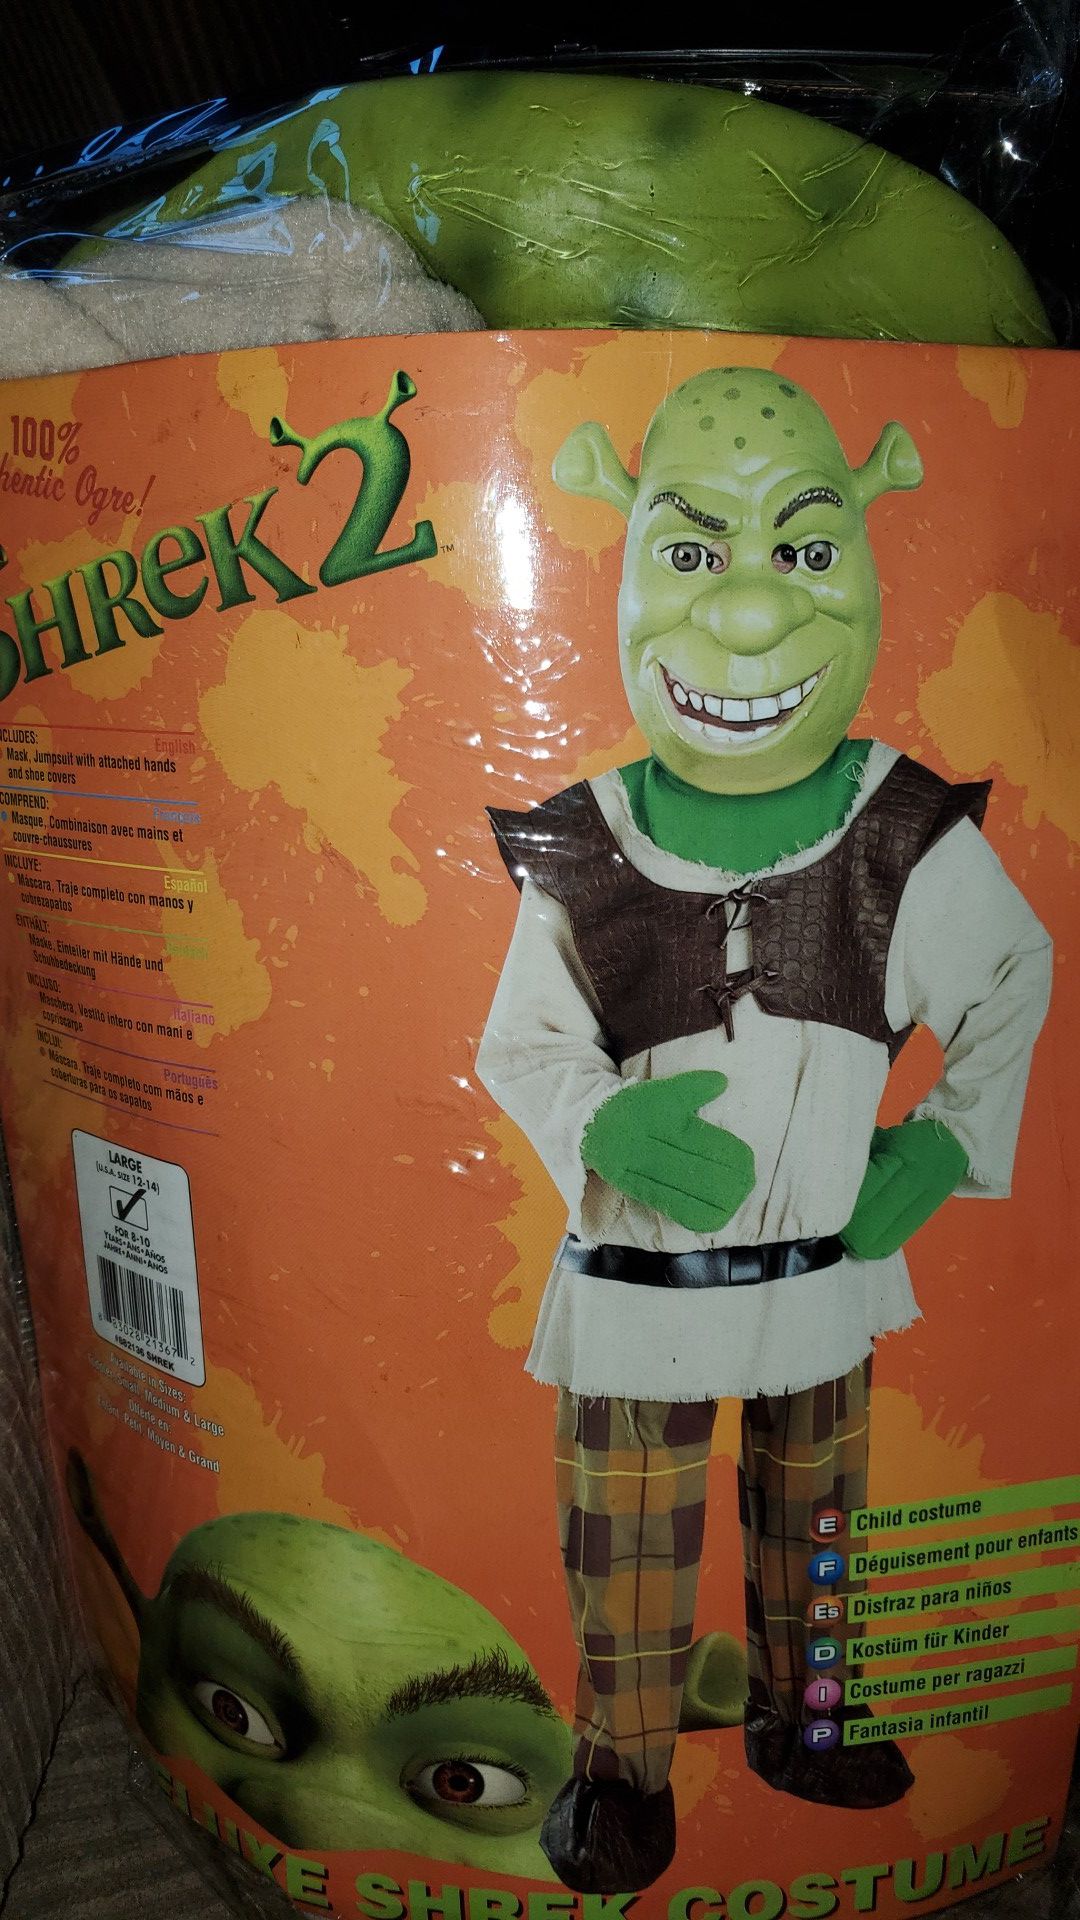 Brand new Shrek 2